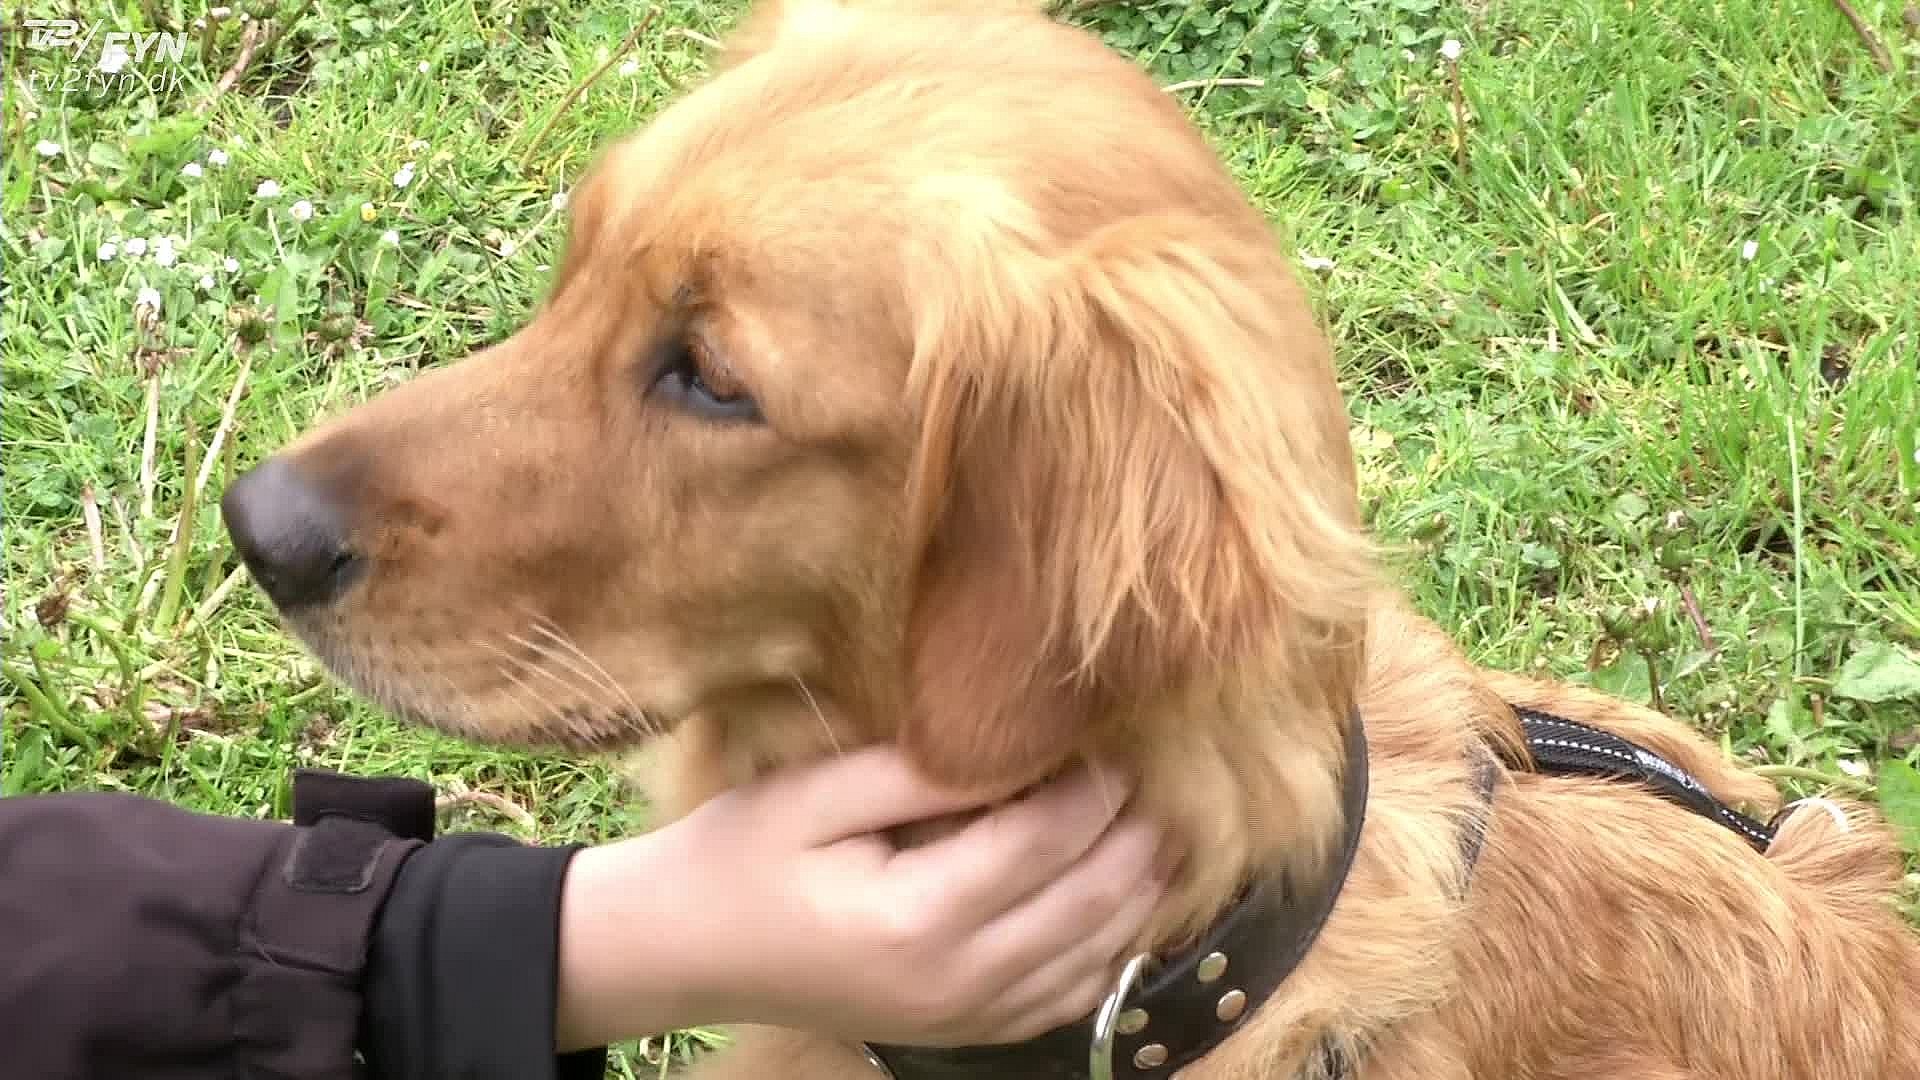 dyrlæge forarget over salg af stødhalsbånd: Hundene ved hvad der rammer dem | TV2 Fyn